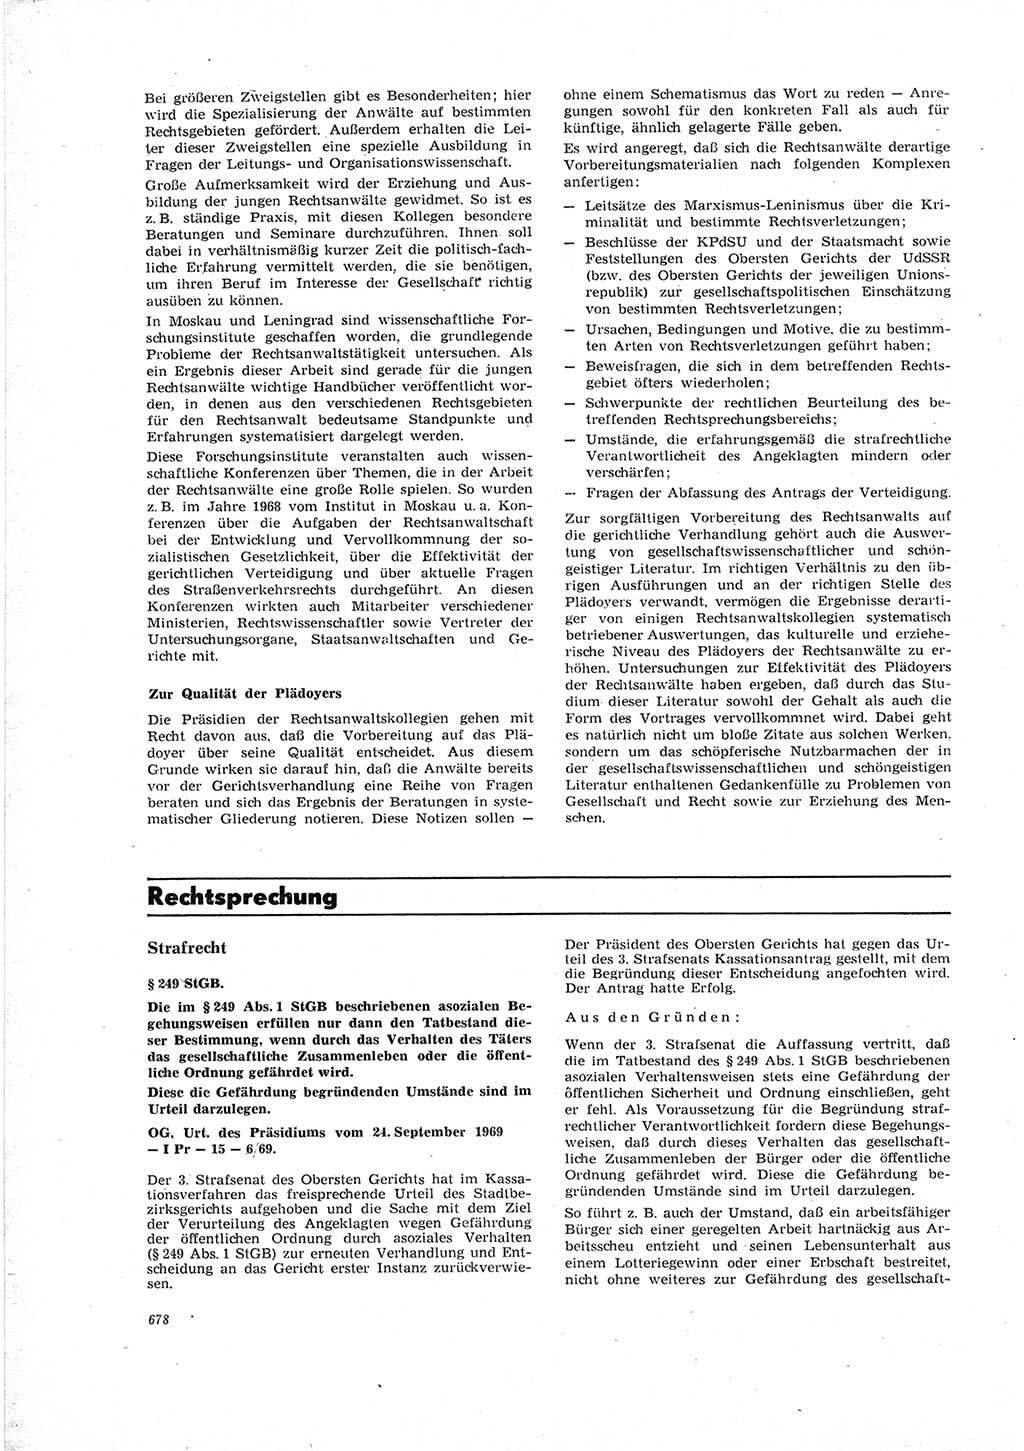 Neue Justiz (NJ), Zeitschrift für Recht und Rechtswissenschaft [Deutsche Demokratische Republik (DDR)], 23. Jahrgang 1969, Seite 678 (NJ DDR 1969, S. 678)